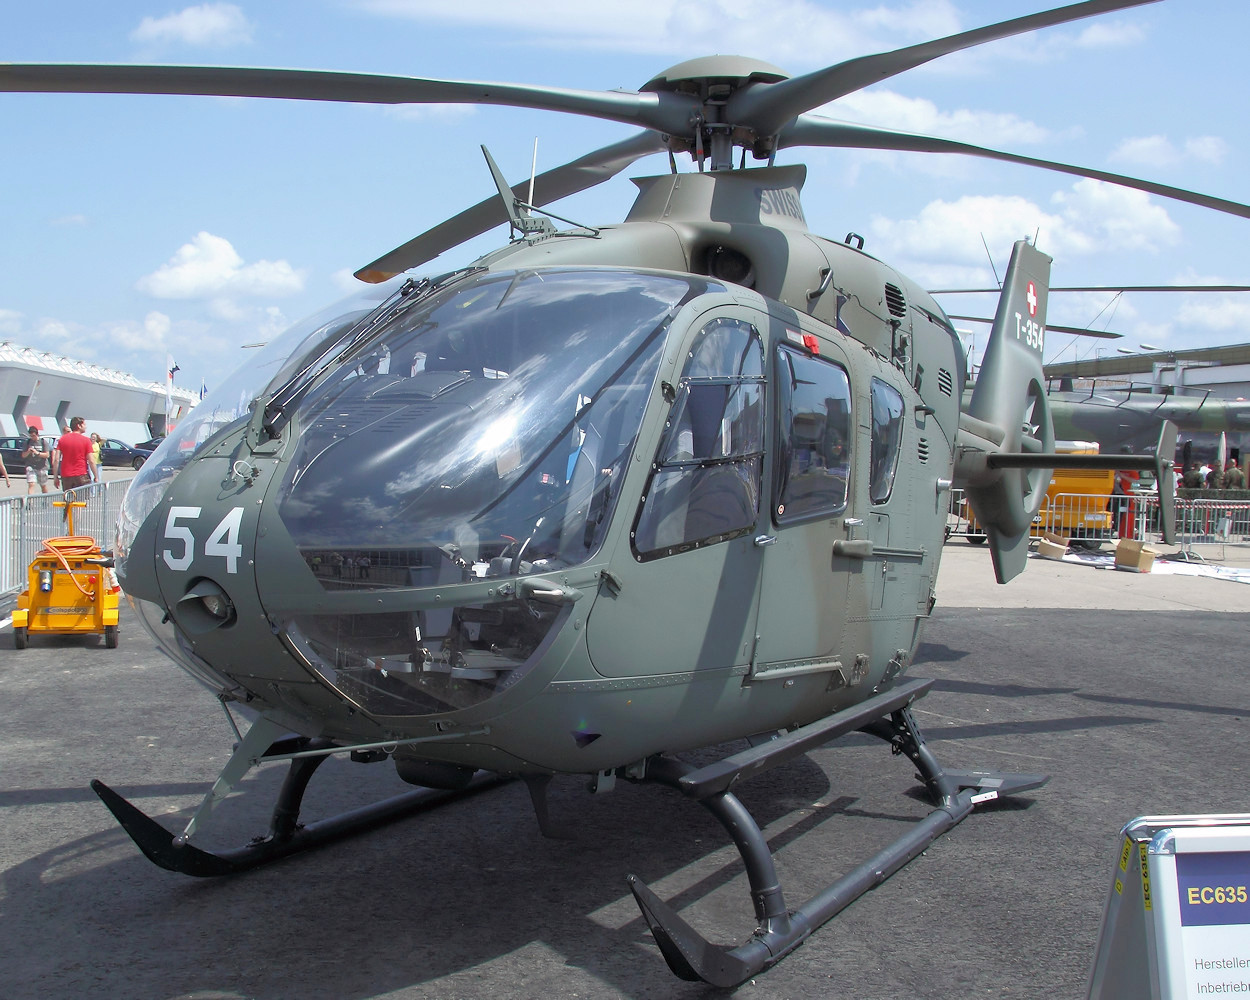 Eurocopter EC 635 - militärische Version des Hubschraubers Eurocopter EC 135